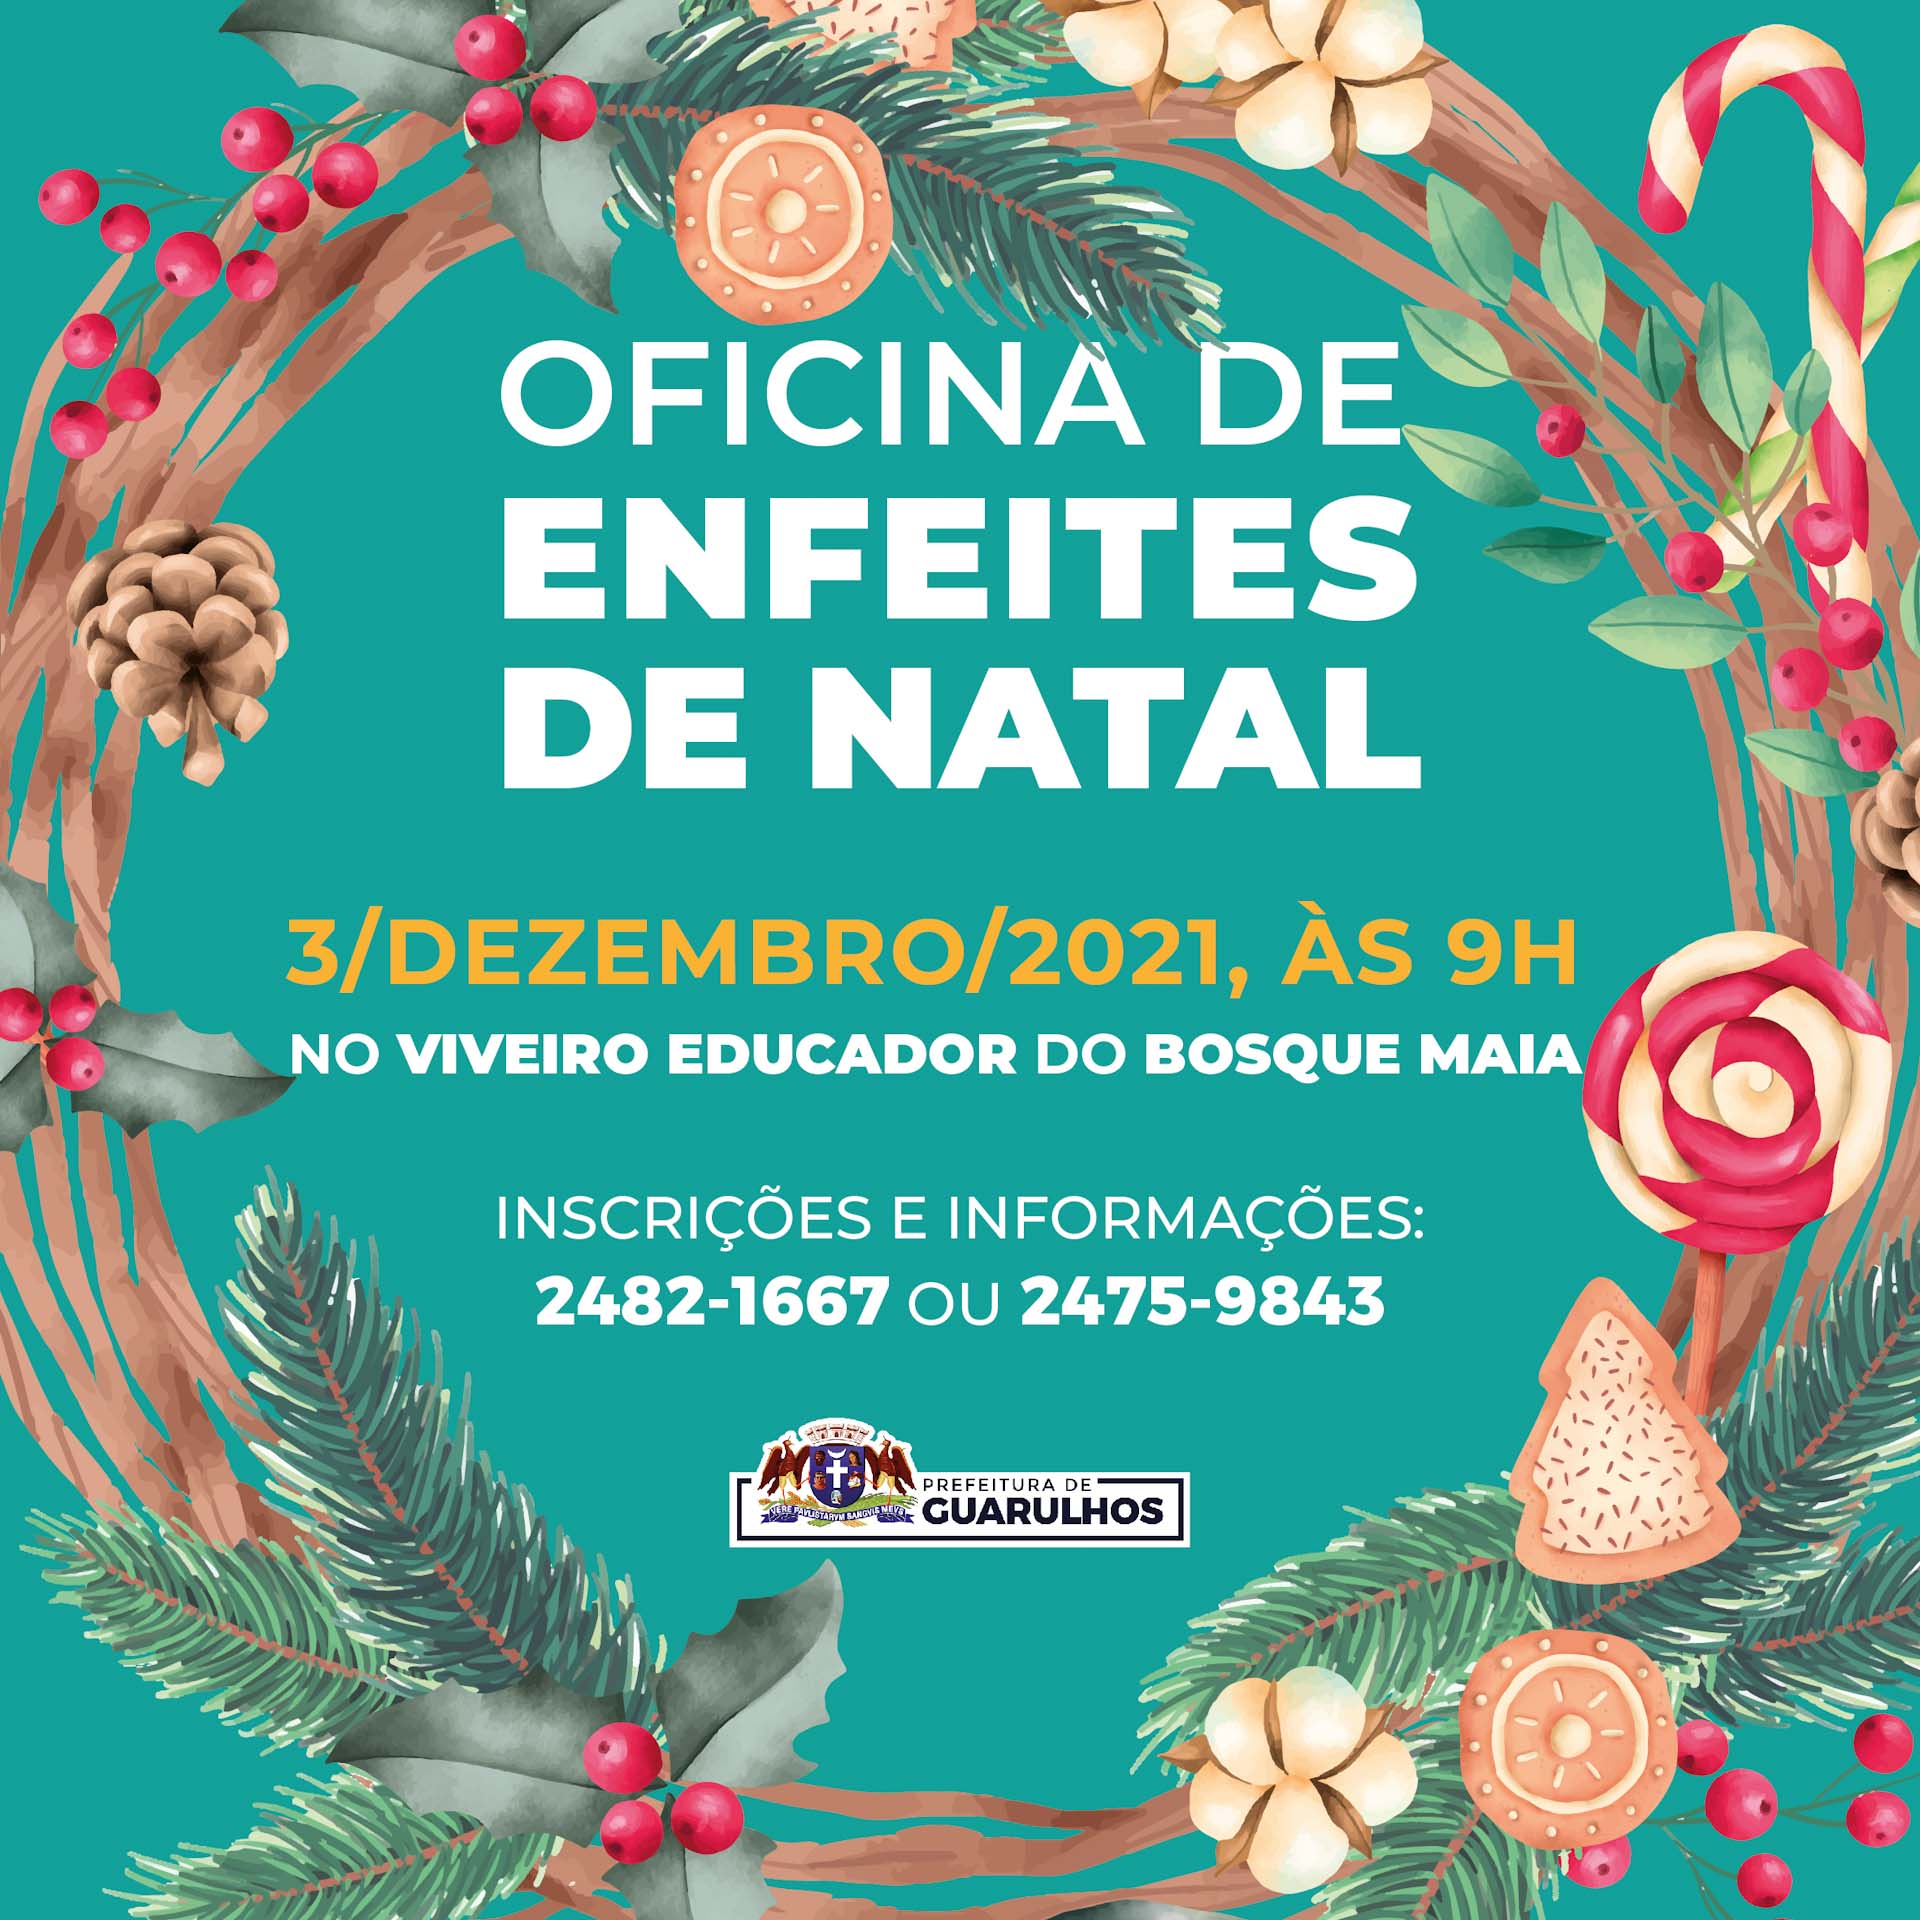 Criação de enfeites de Natal sustentáveis terá oficina especial no Bosque  Maia | Prefeitura de Guarulhos